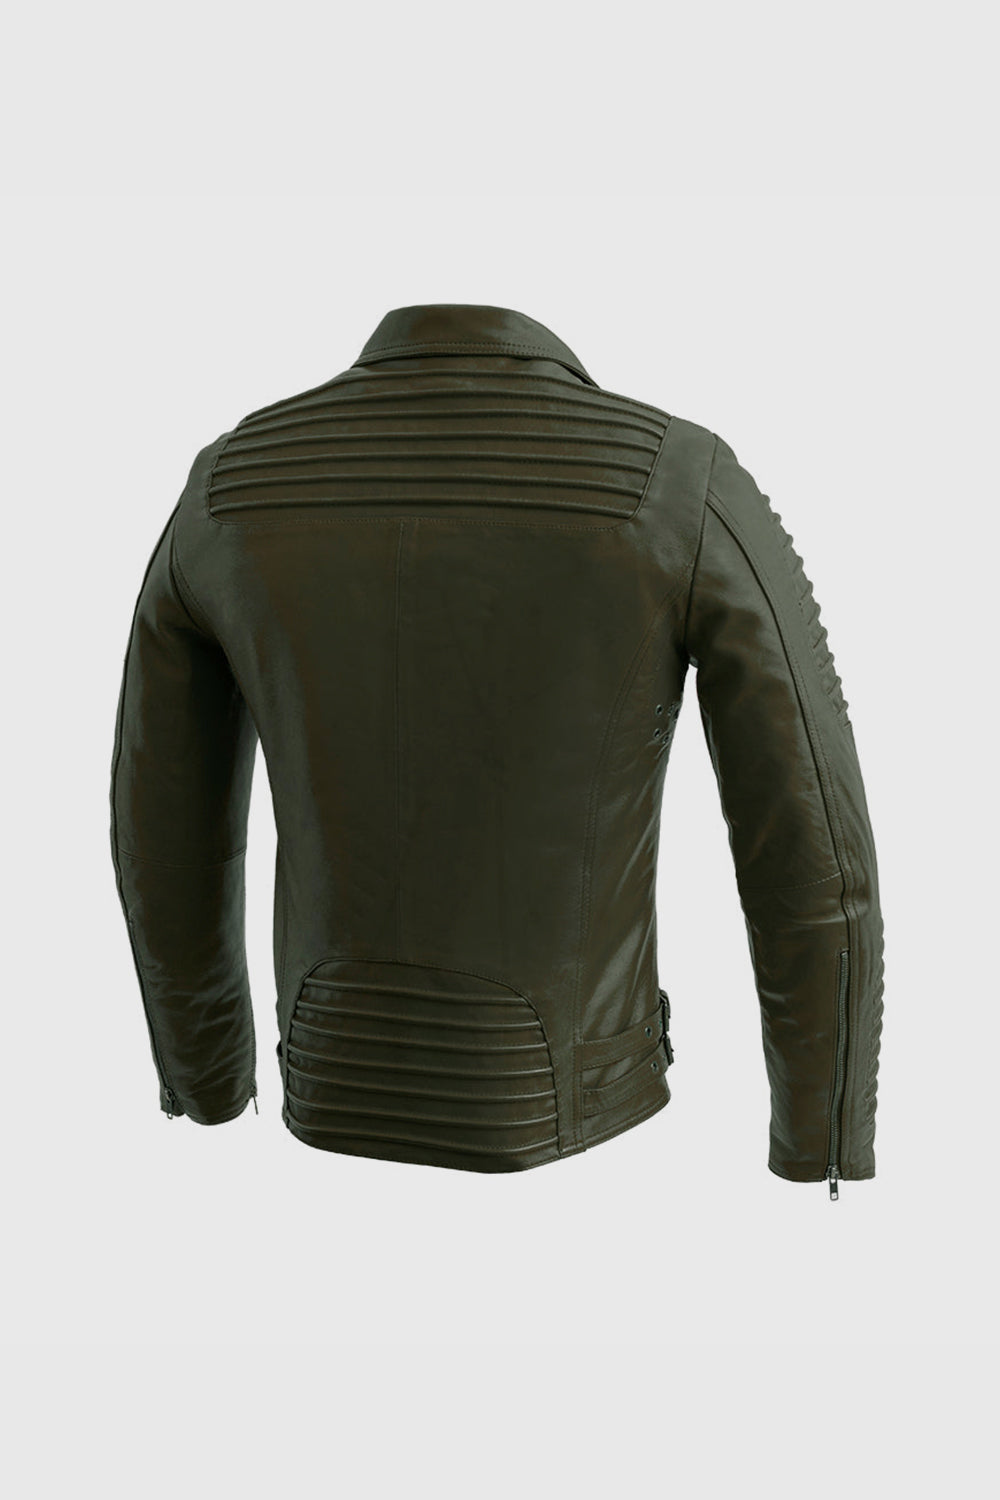 Washed Lambskin Leather Jacket. The washed lambskin leather jackets are… |  by zero421 studio | Medium